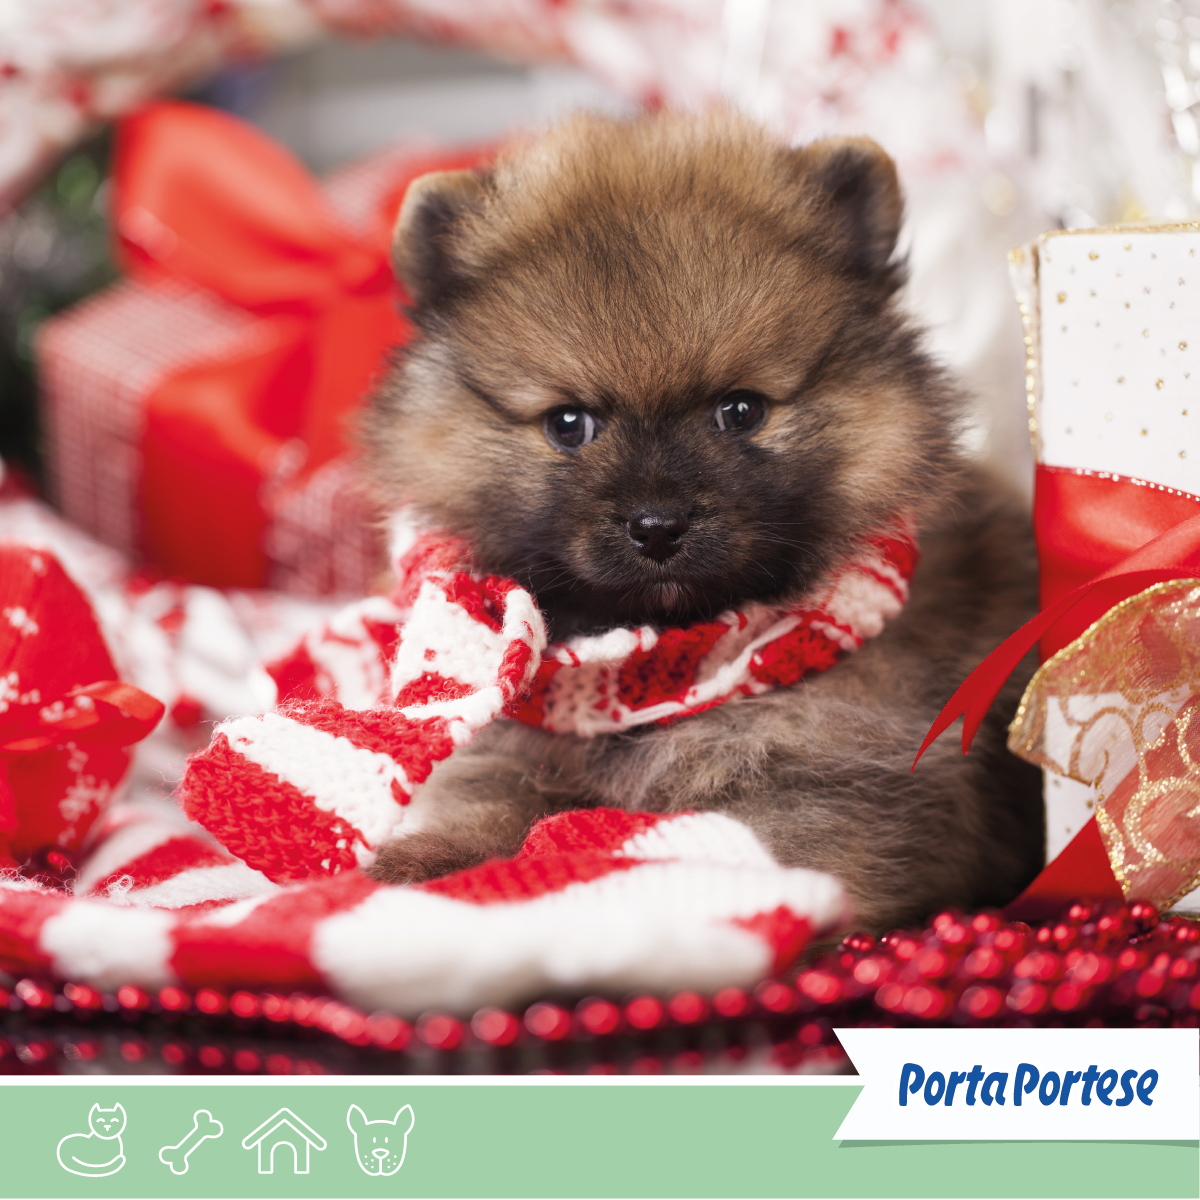 Per Natale vesti a festa anche i tuoi 'amici pelosi'. 🐱🐶🐰 Cerca tra gli annunci di PortaPortese! 👇🏻@Roma #cuccioli #natale #animali hyperurl.co/bjssf3